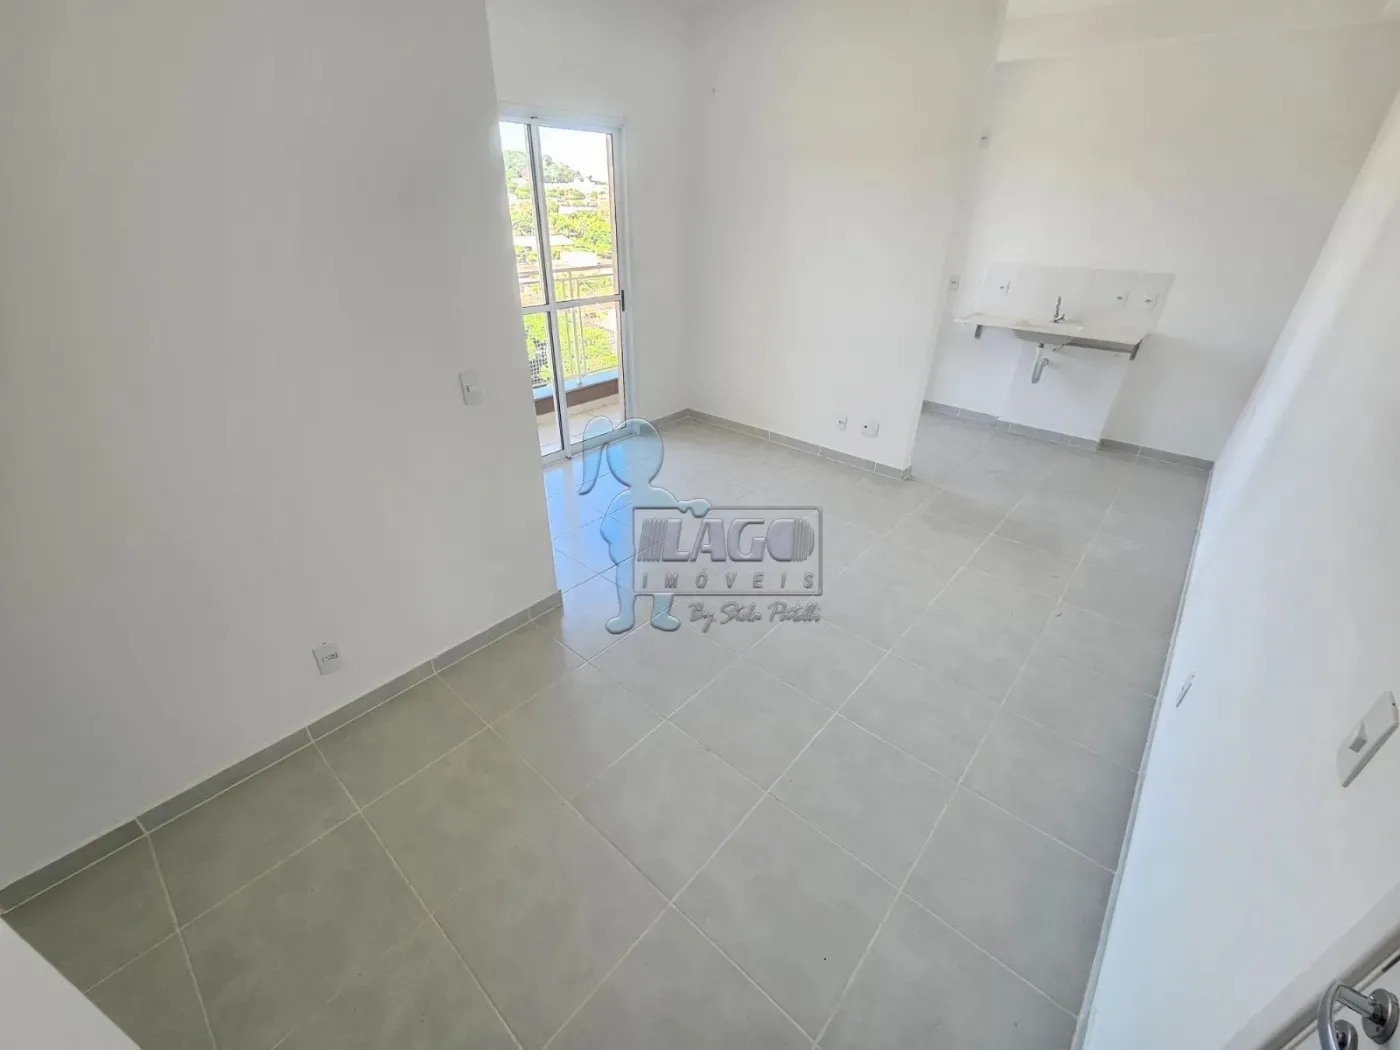 Comprar Apartamentos / Padrão em Ribeirão Preto R$ 263.500,79 - Foto 7